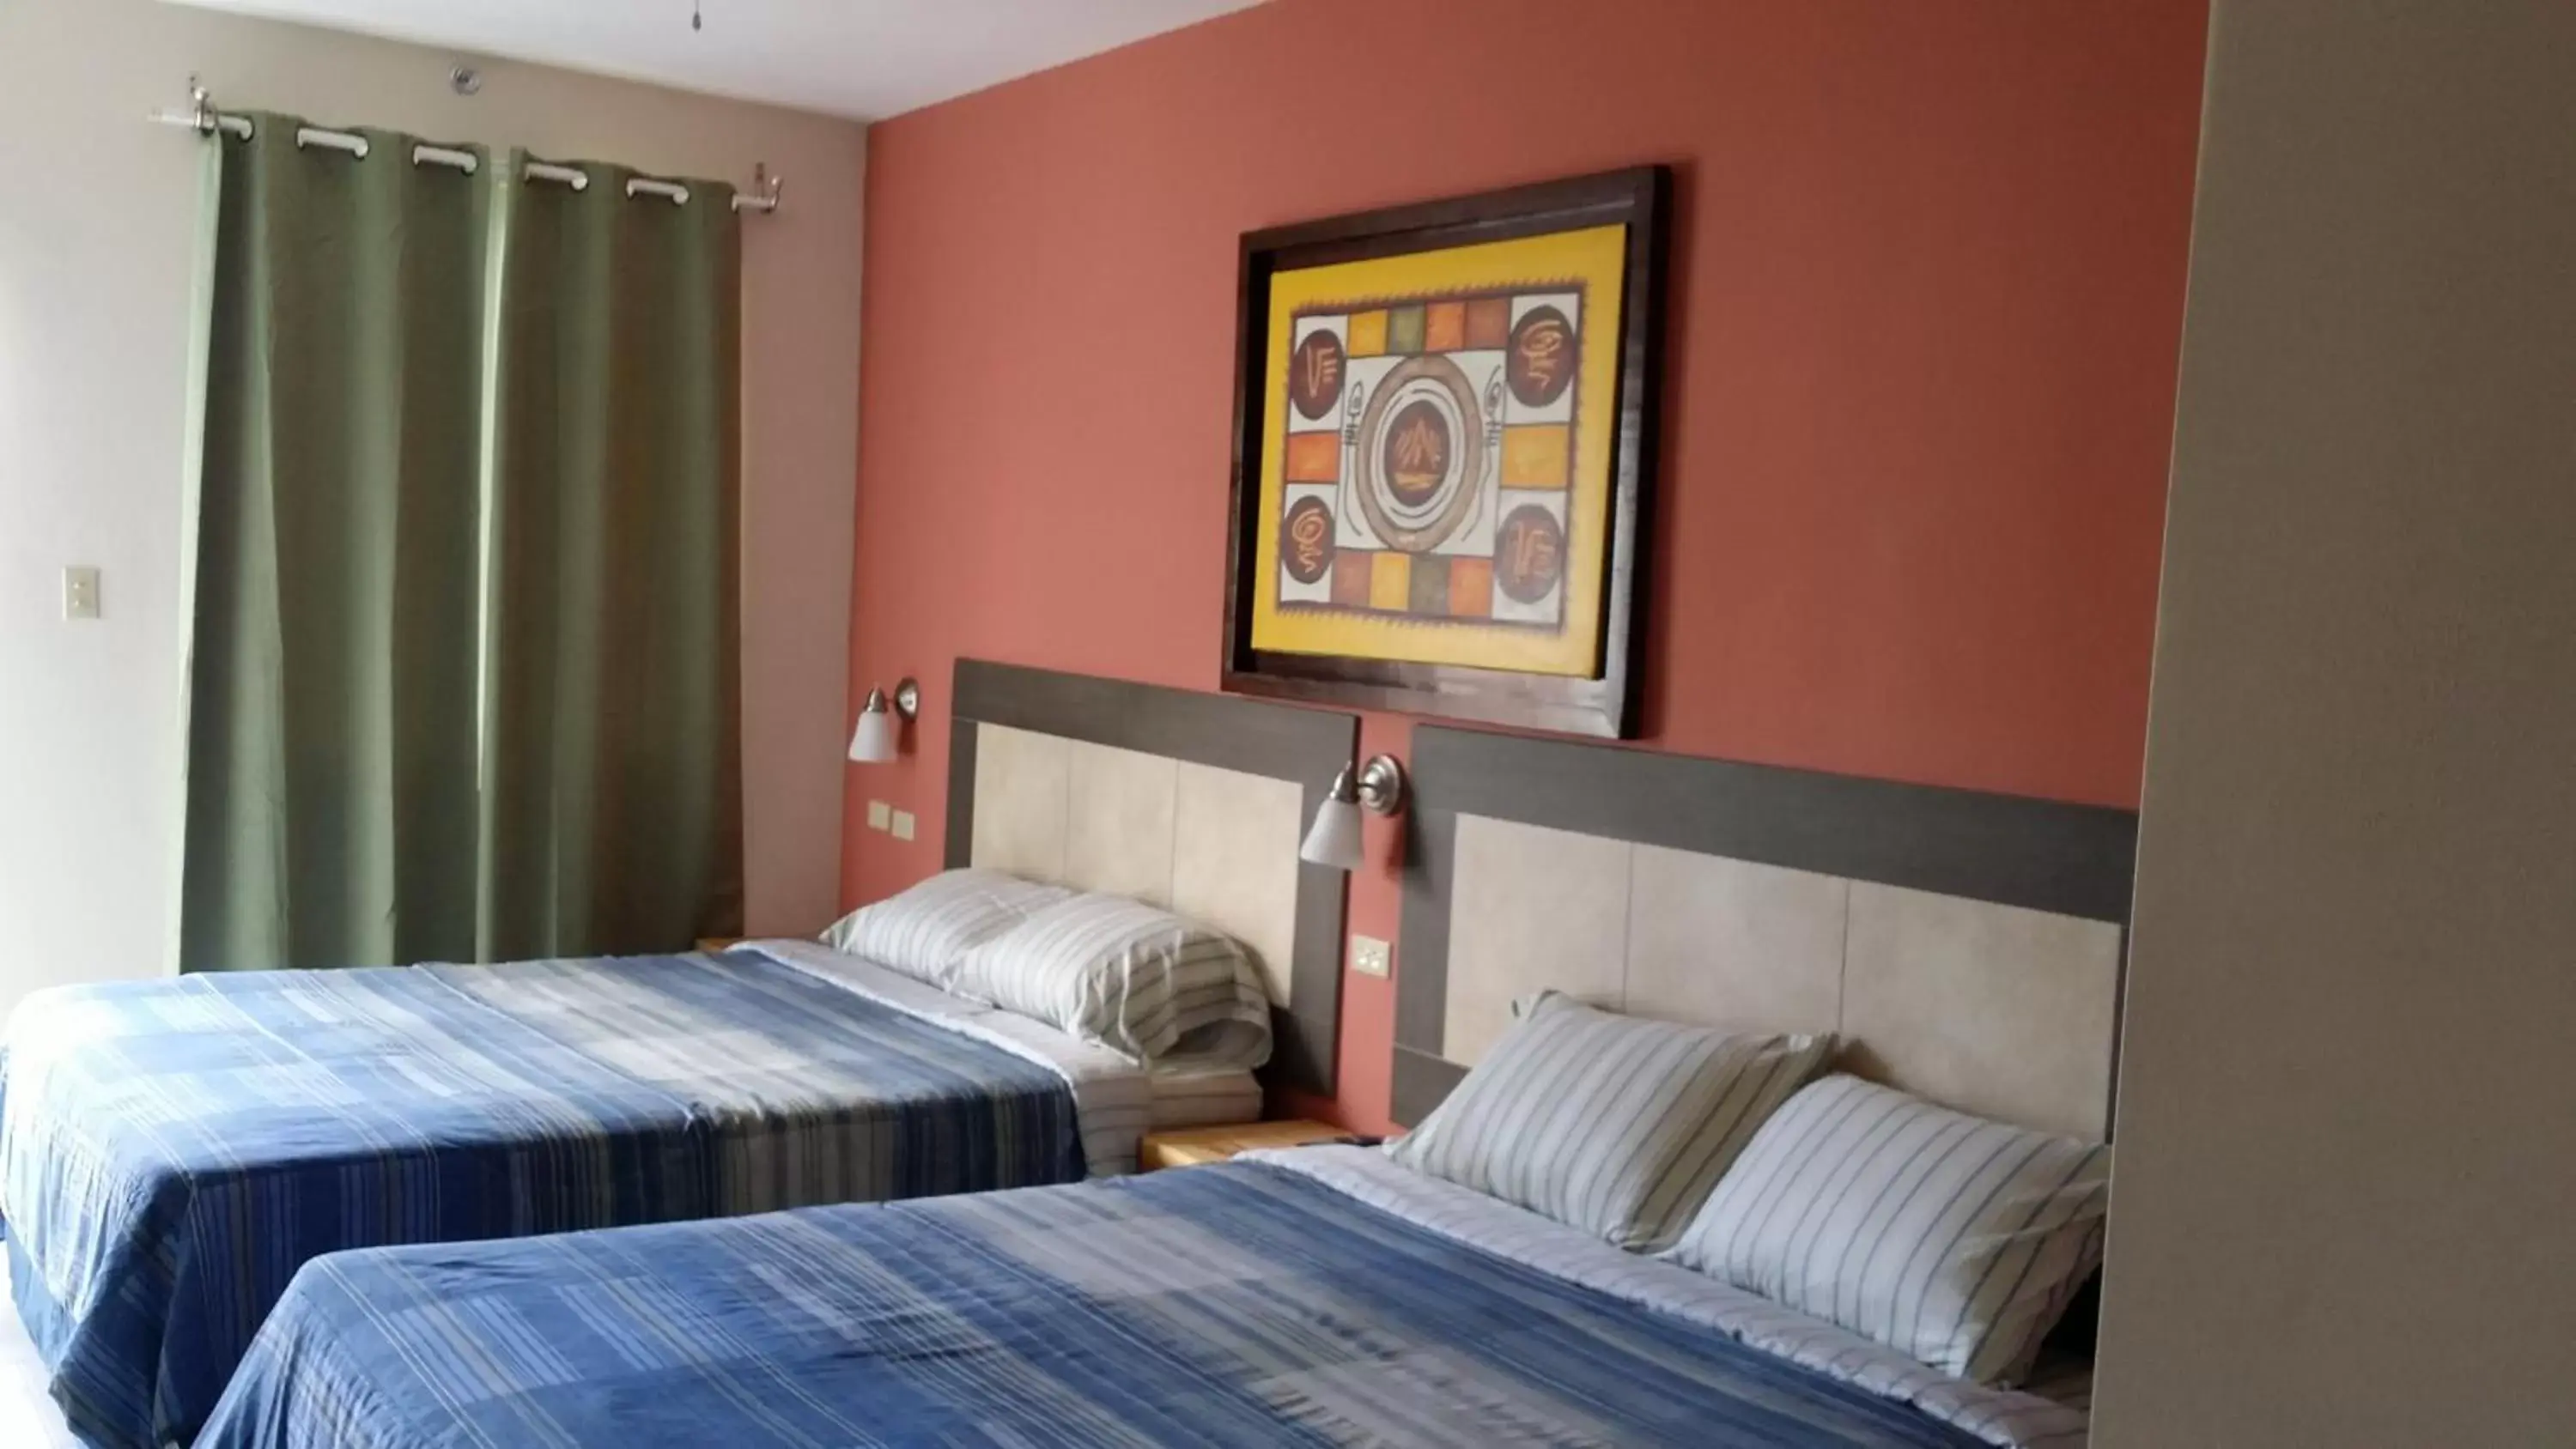 Bedroom, Bed in Dreams Hotel Puerto Rico